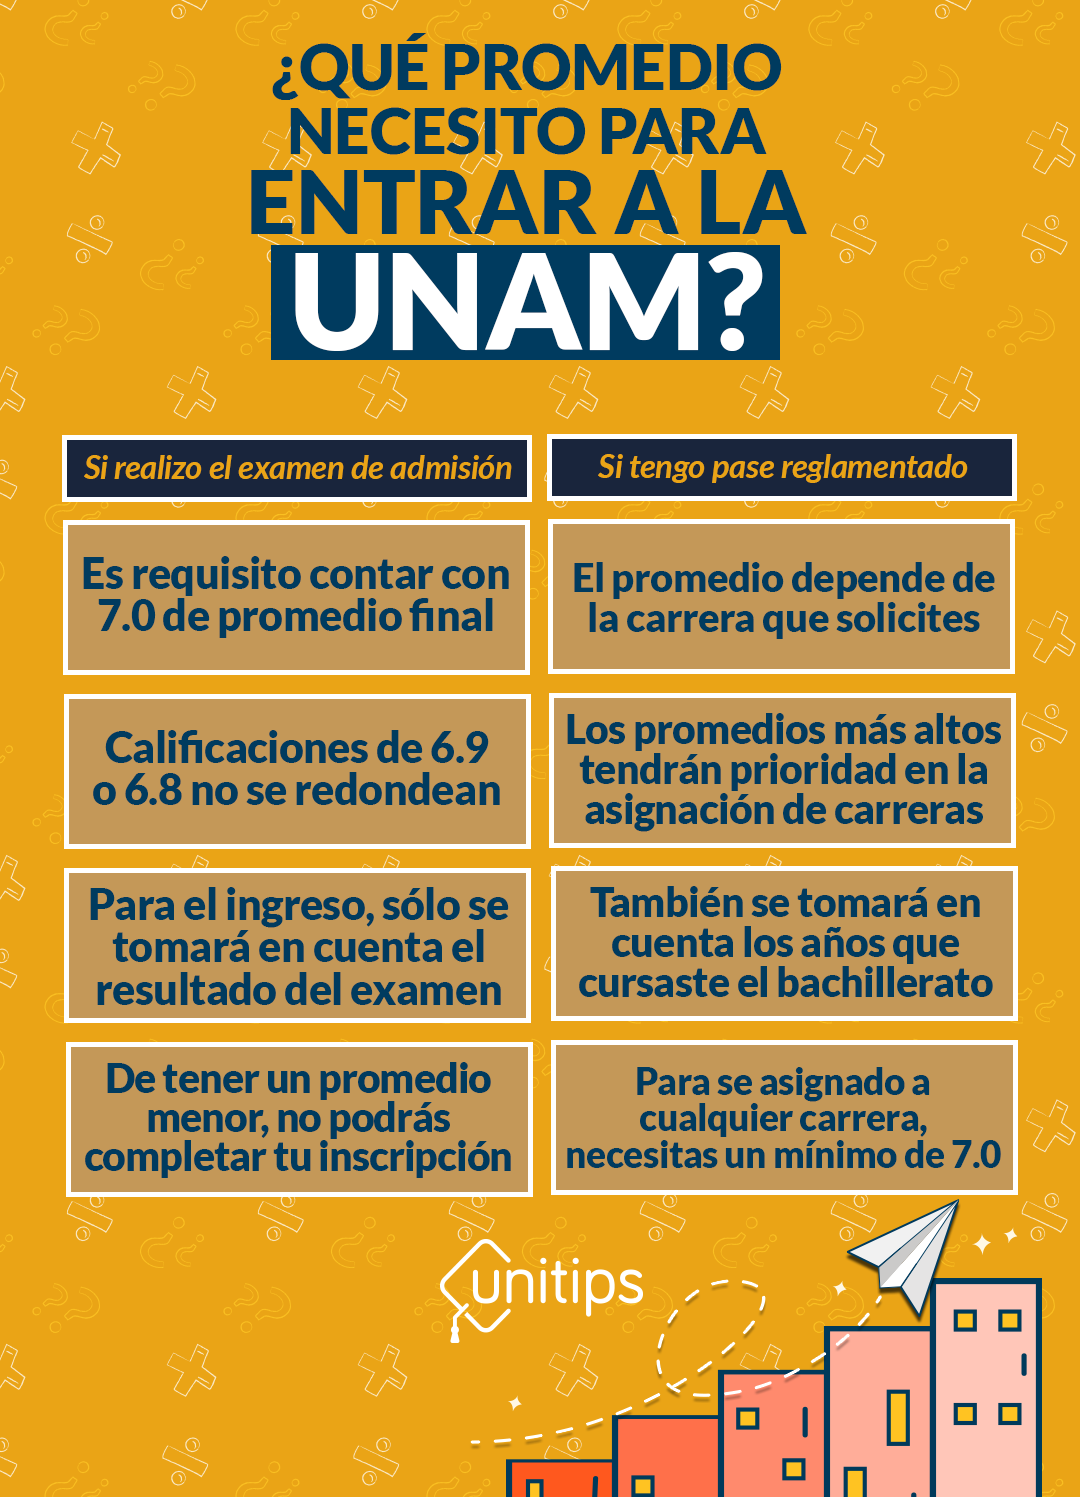 ¿Qué promedio acepta la UNAM